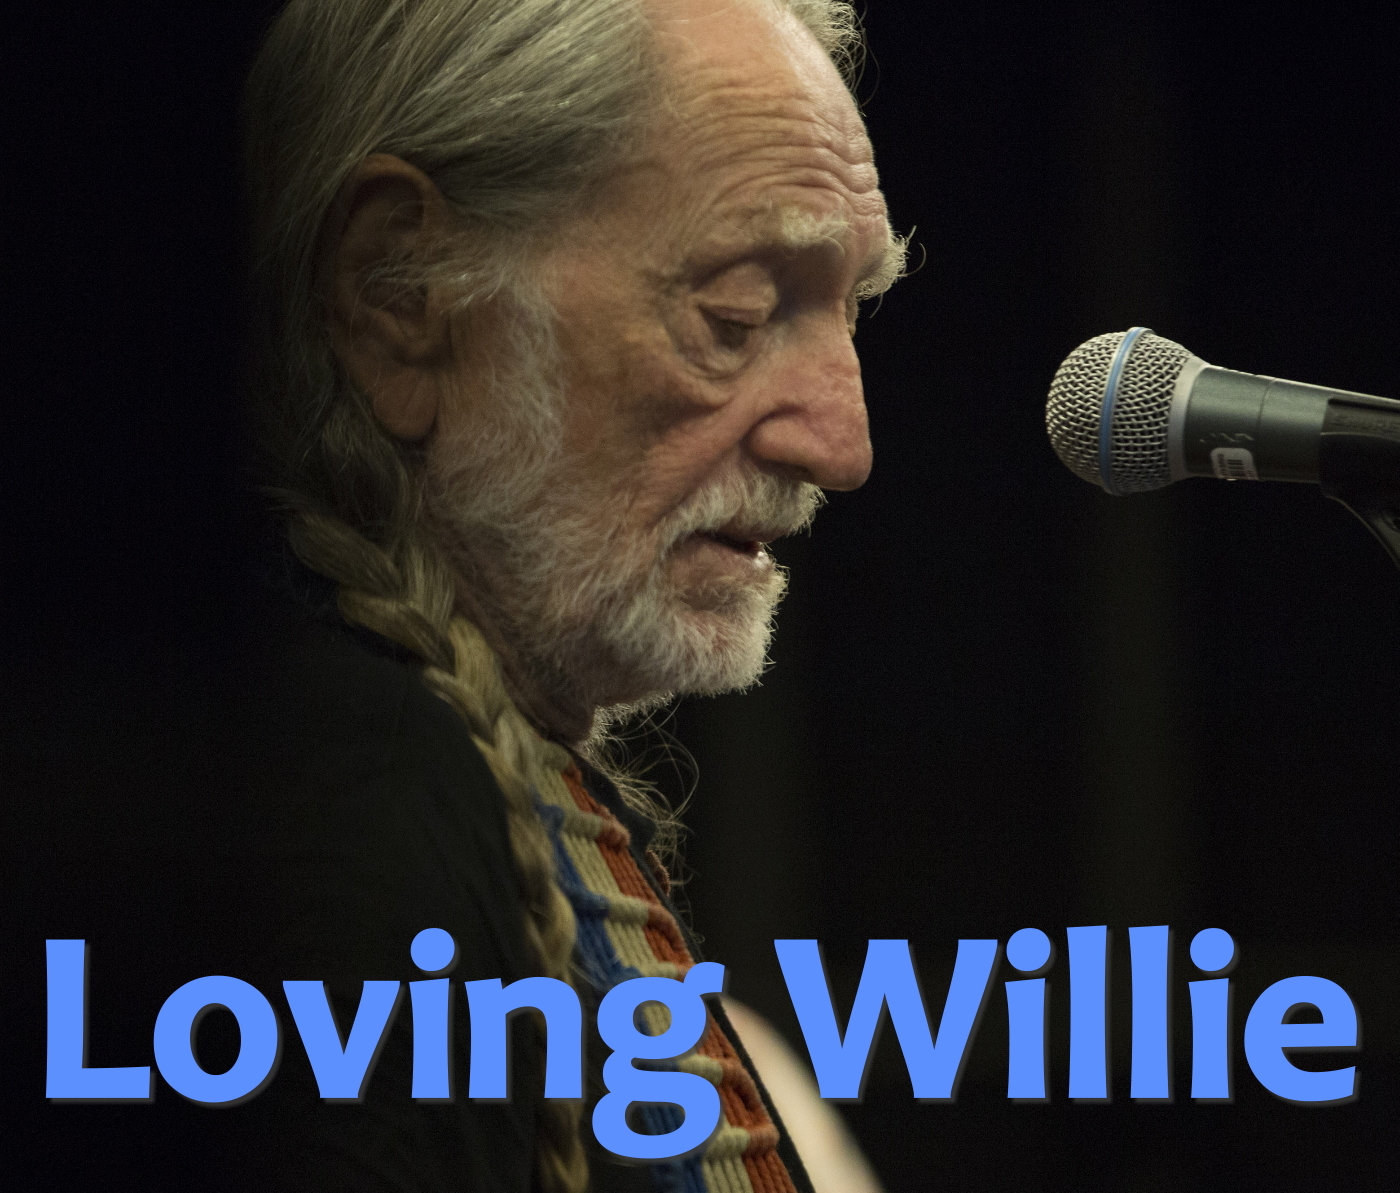 Loving Willie